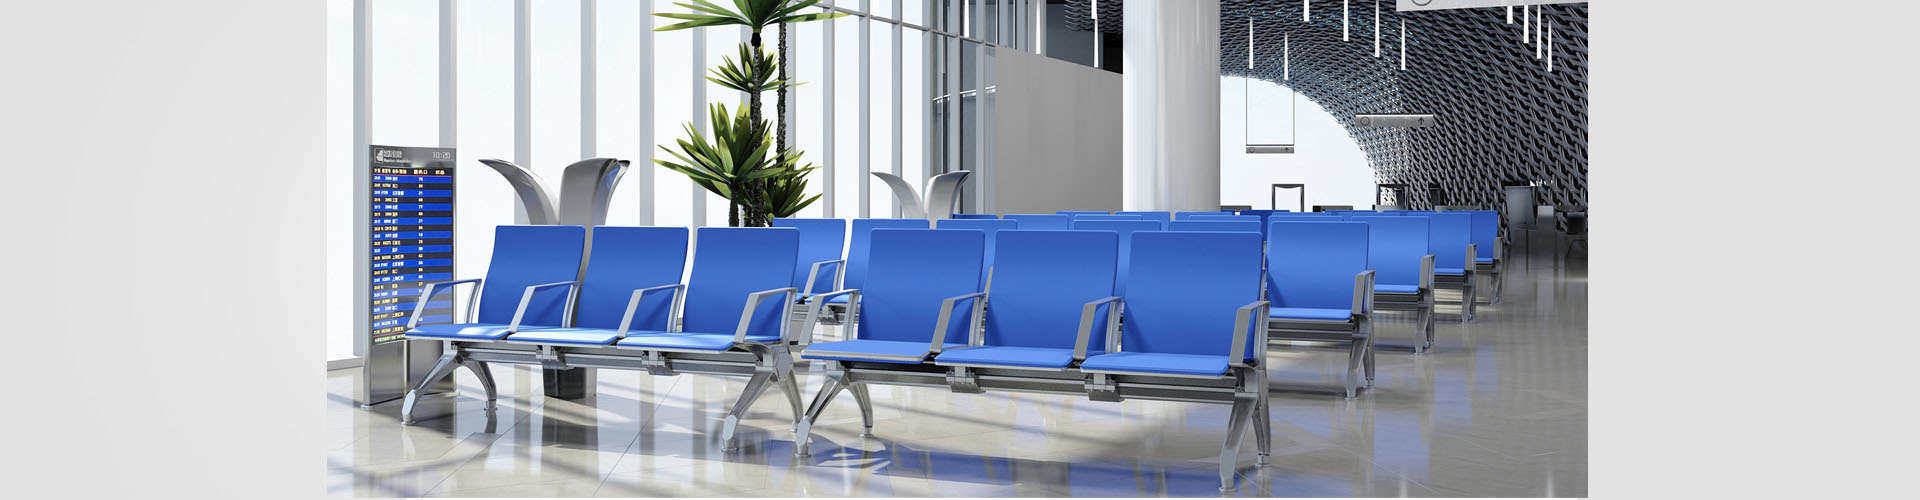 Airport Chair/Waiting chair - T26